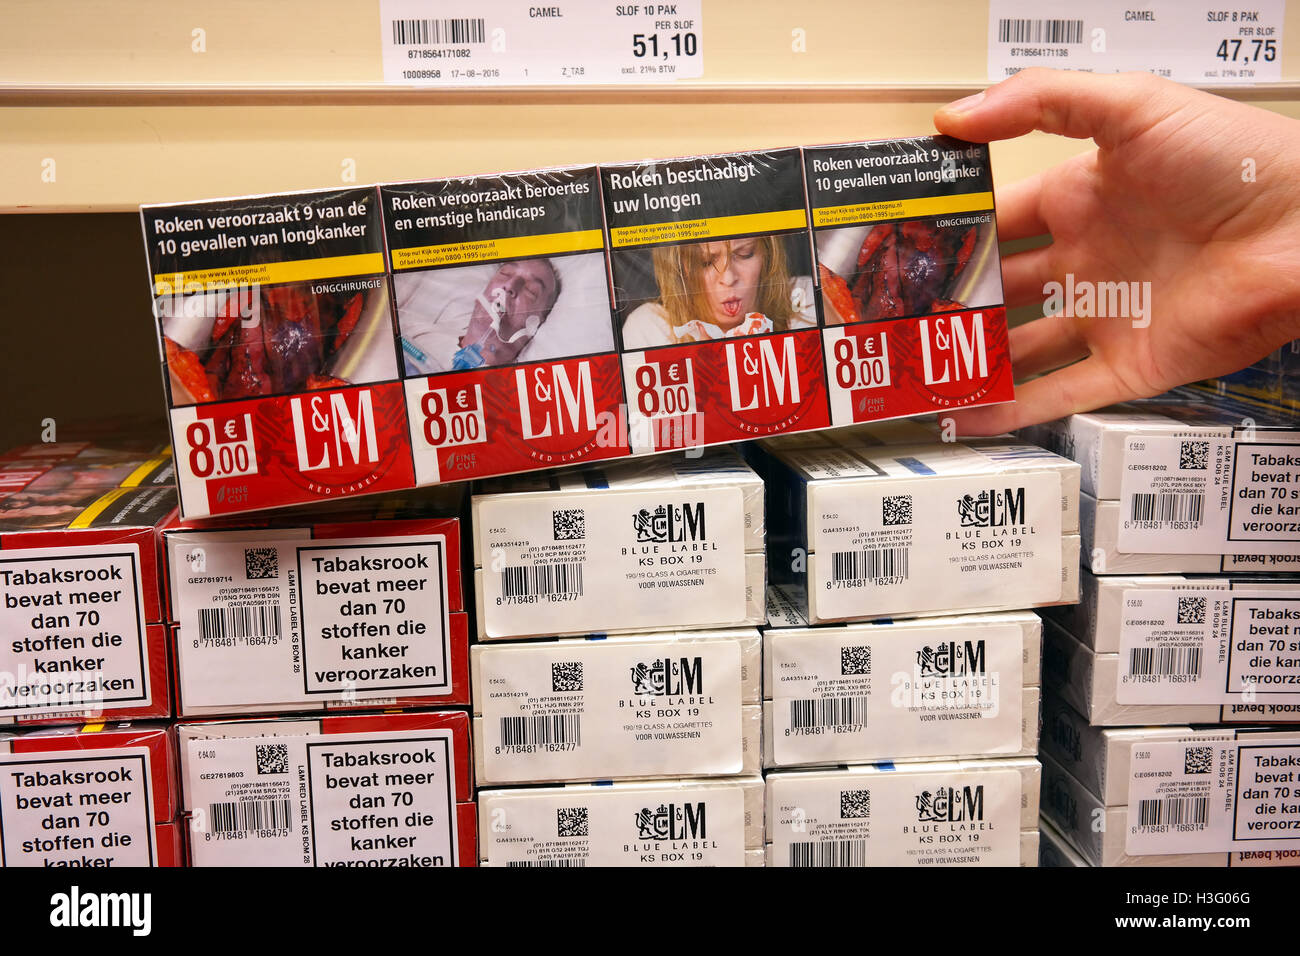 Le sigarette in un commercio all'ingrosso con immagini sui pacchetti di sigarette per illustrare i pericoli del fumo Foto Stock